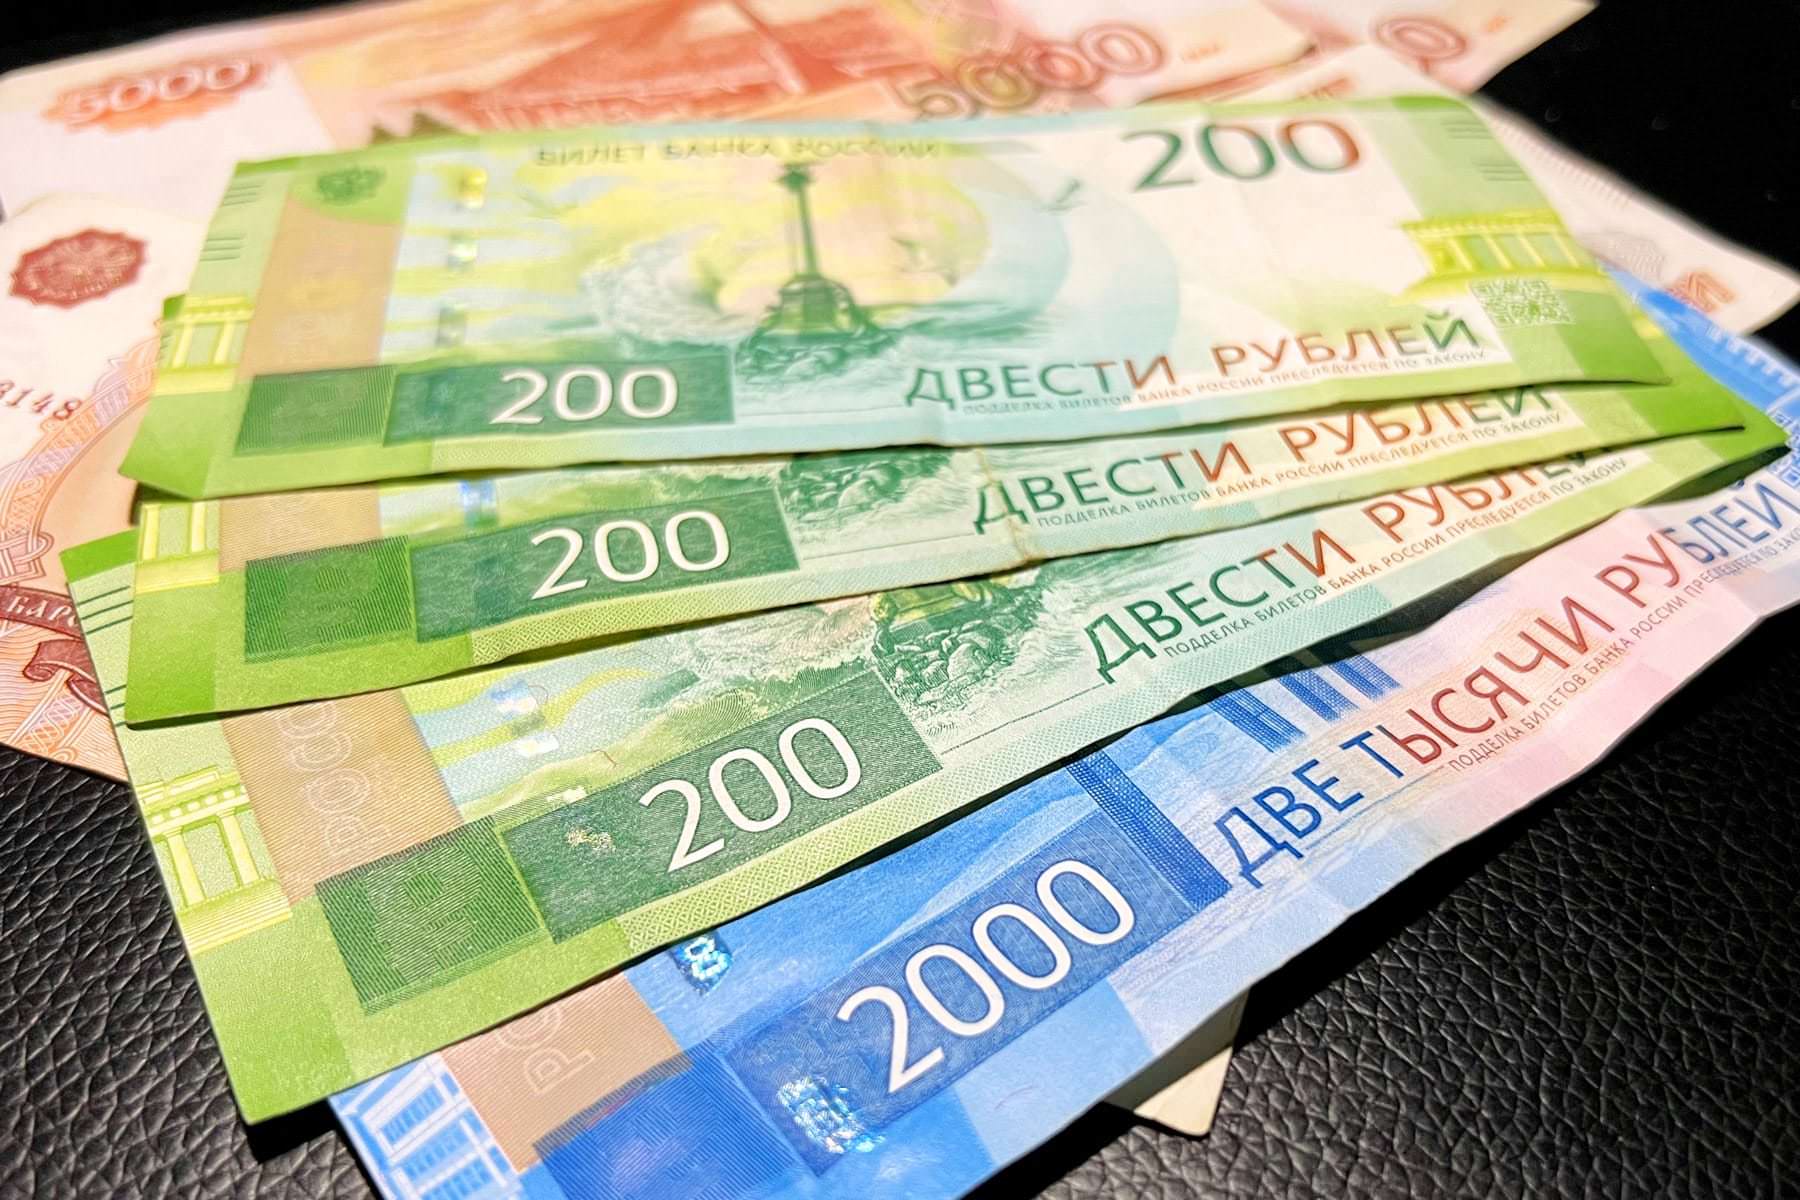 Обнаружена редкая новая банкнота, за которую всем выплачивают по 200 000 рублей